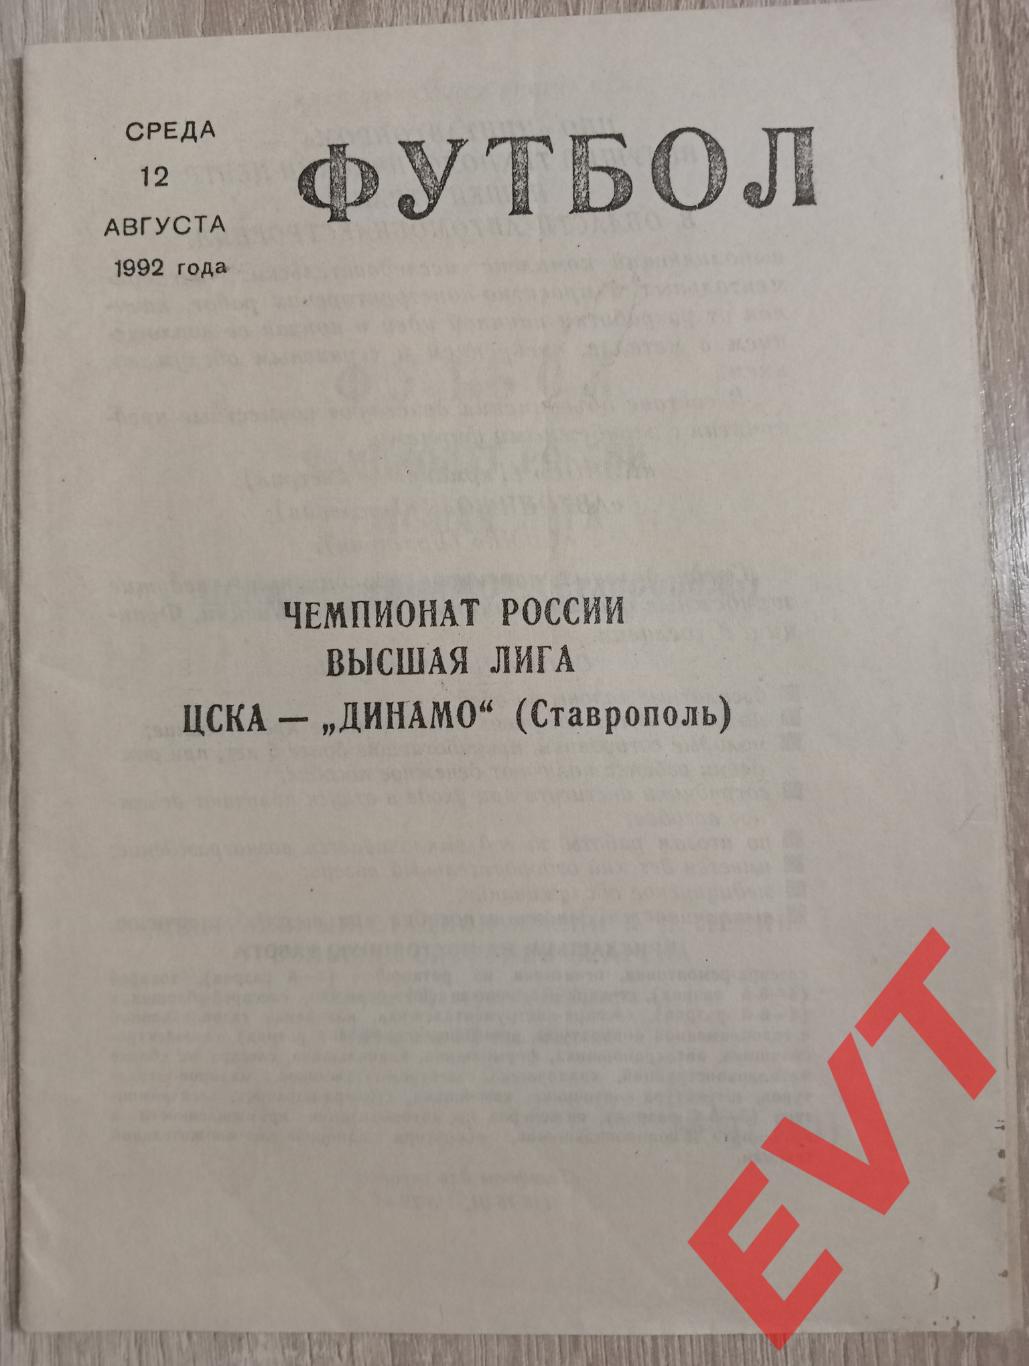 ЦСКА - Динамо Ставрополь. Высшая лига. 12.08.1992.